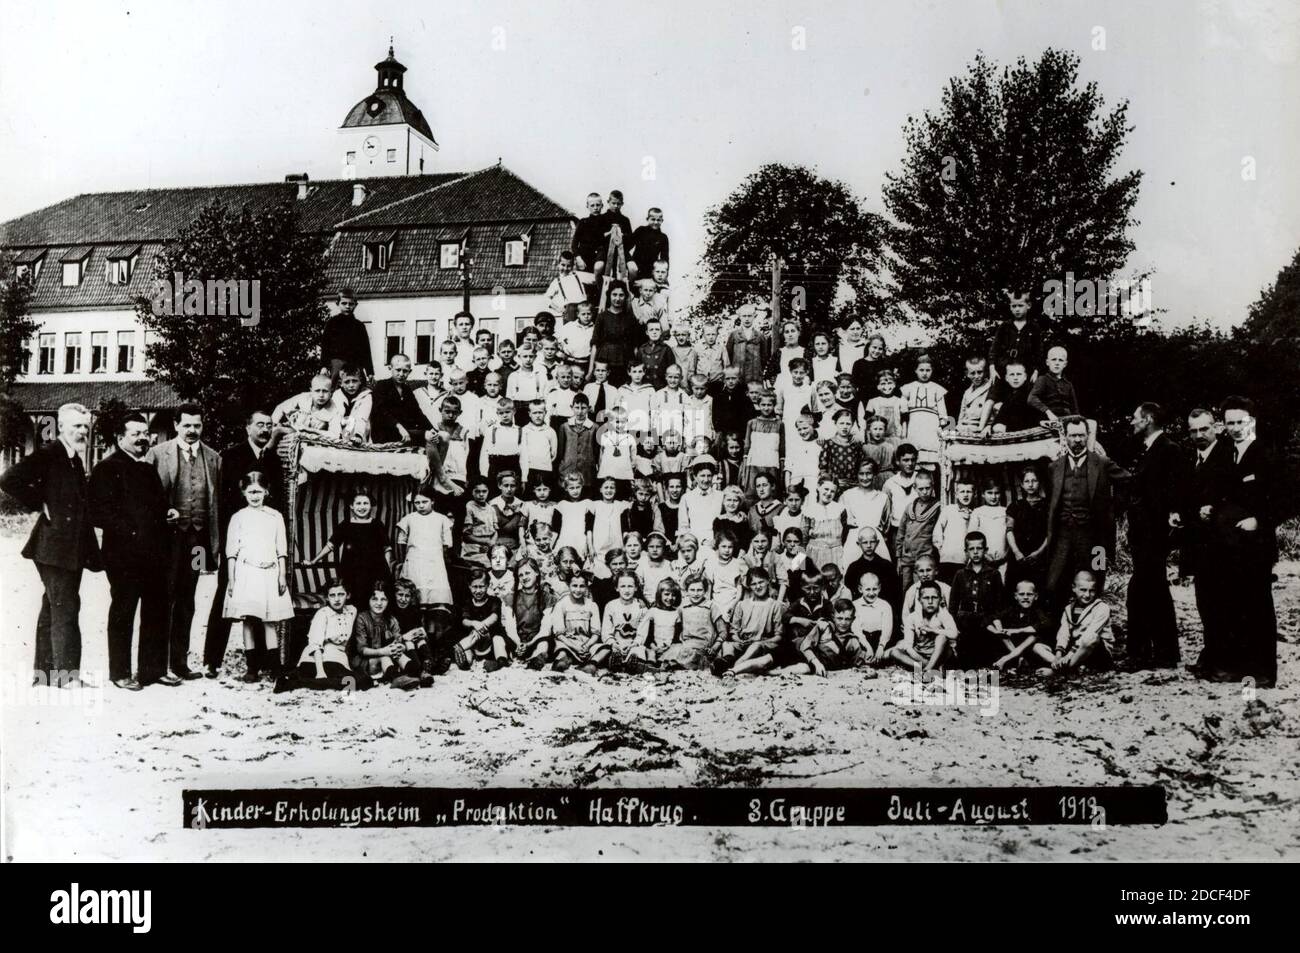 Kinder-Erholungsheim Produktion Haffkrug 1919 mit Reichspräsident Ebert. Stock Photo